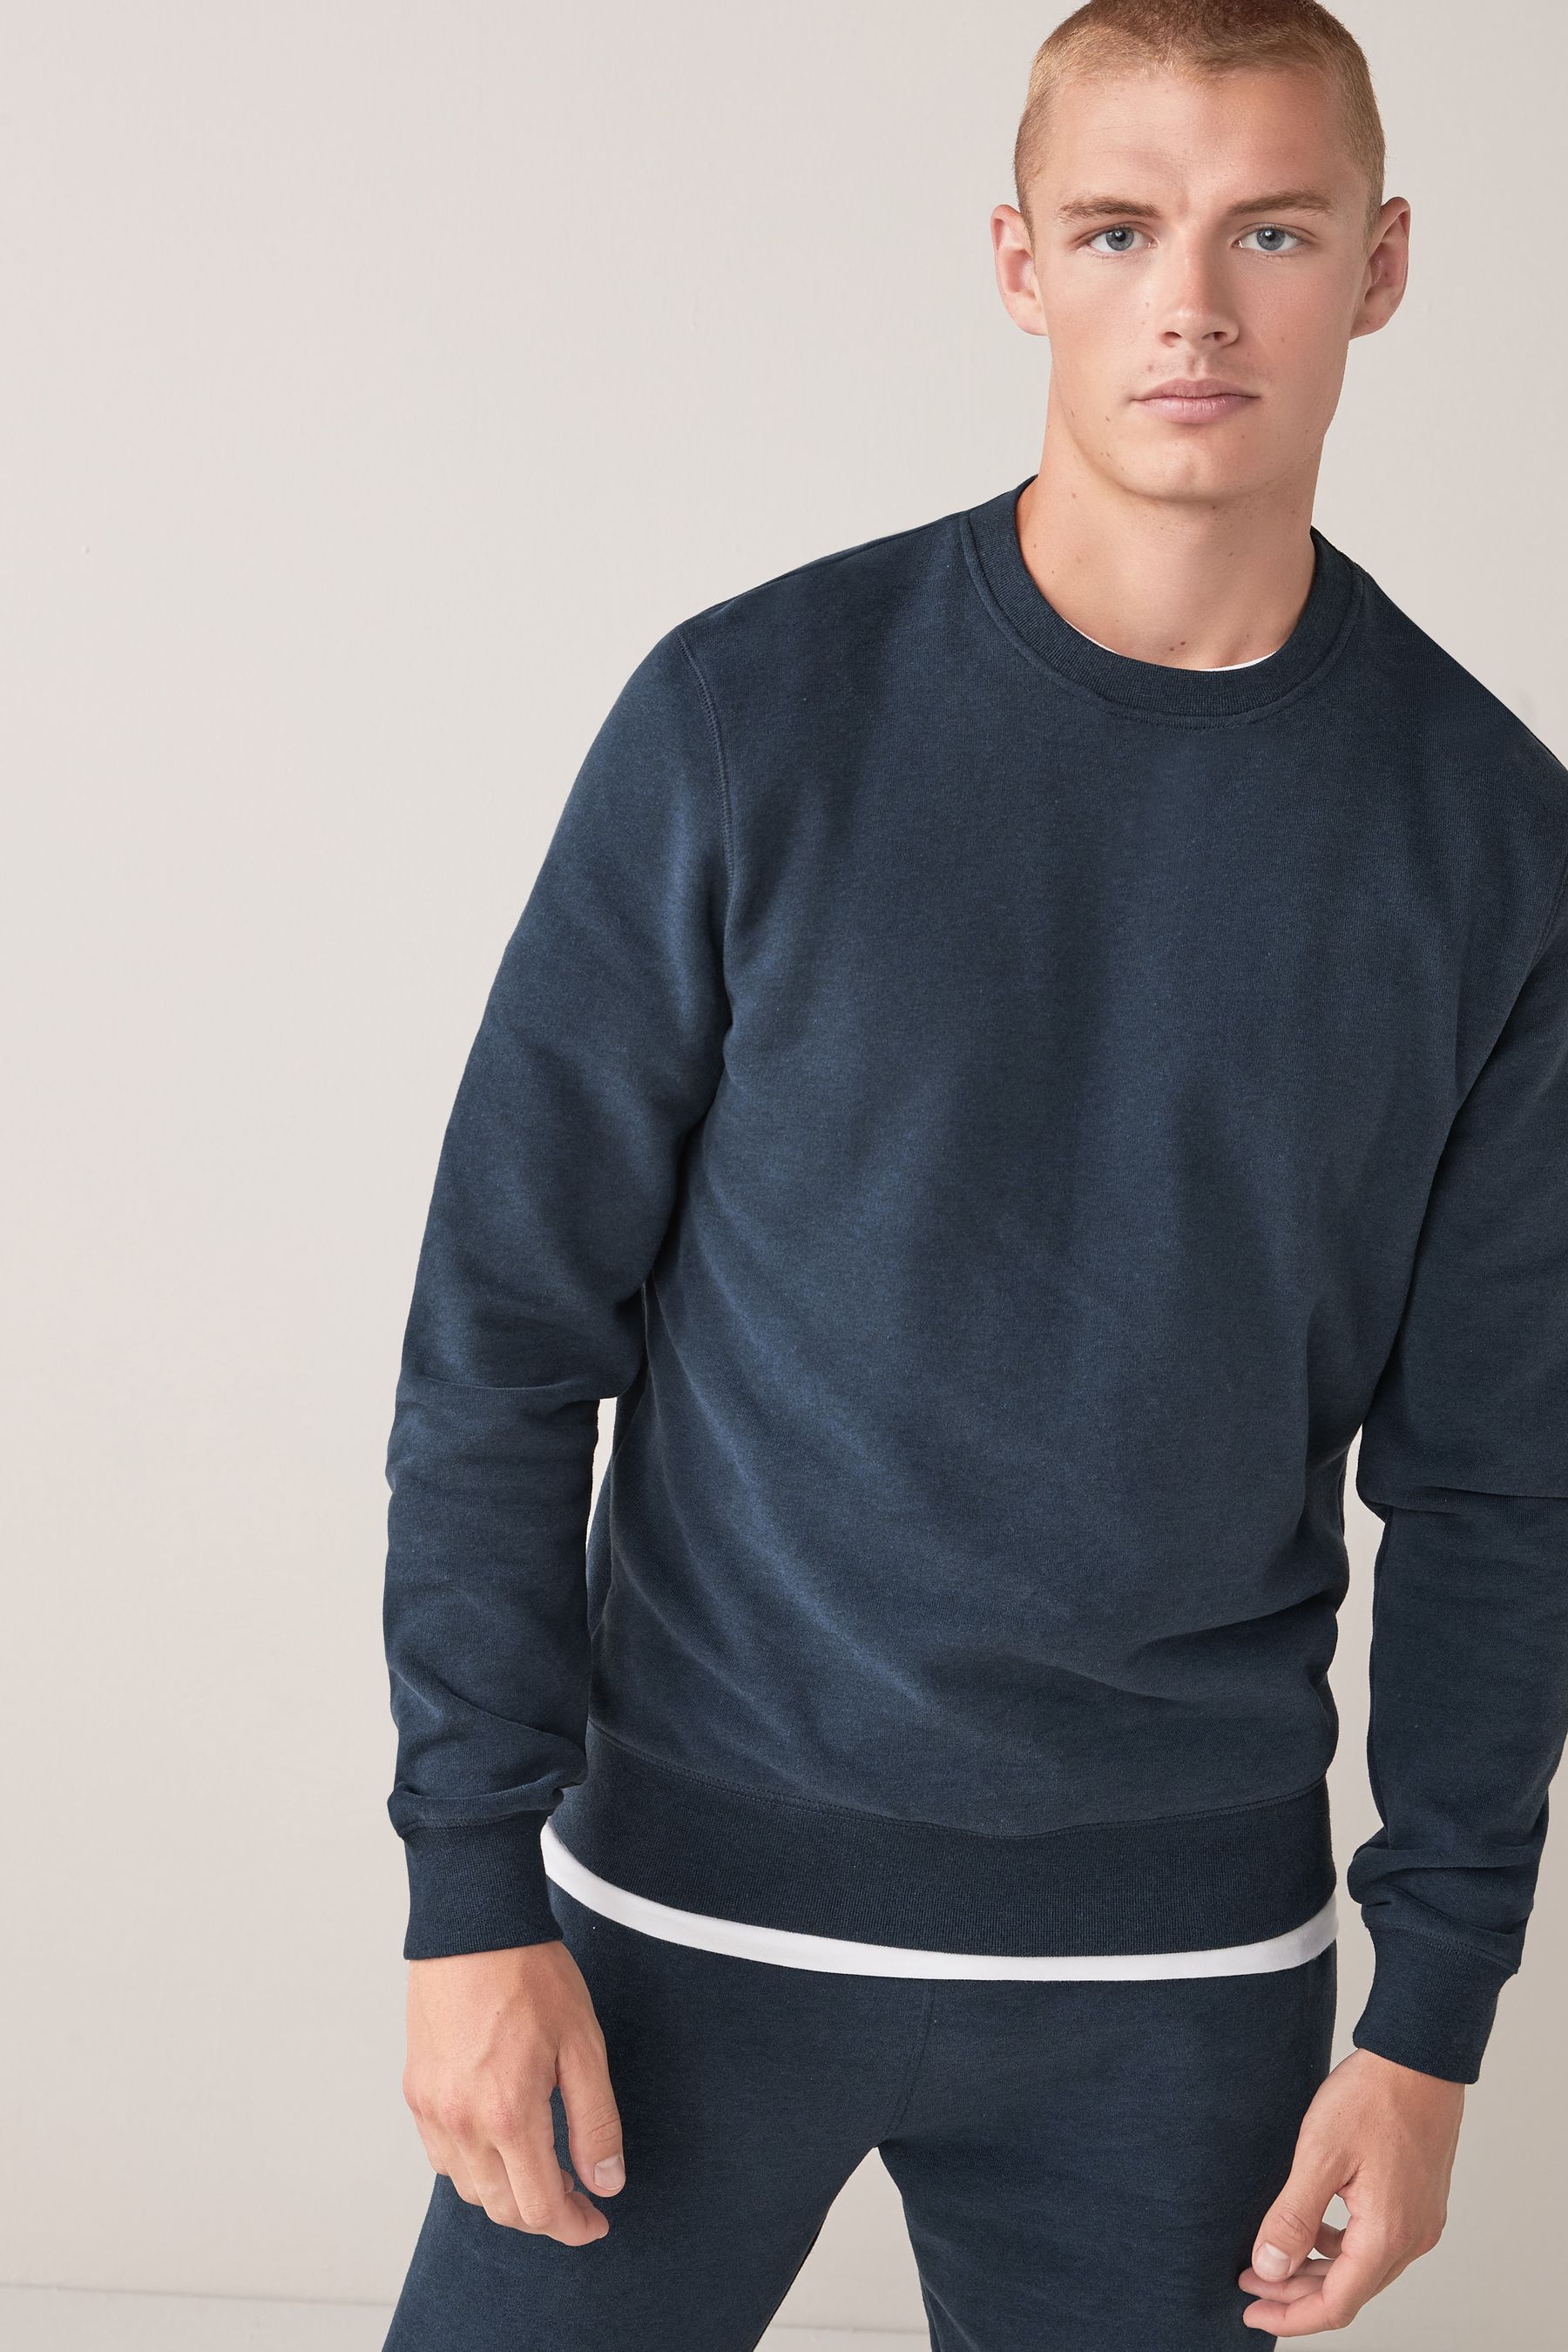 Buy Navy Blue Crew Sweatshirt from the Next UK online shop